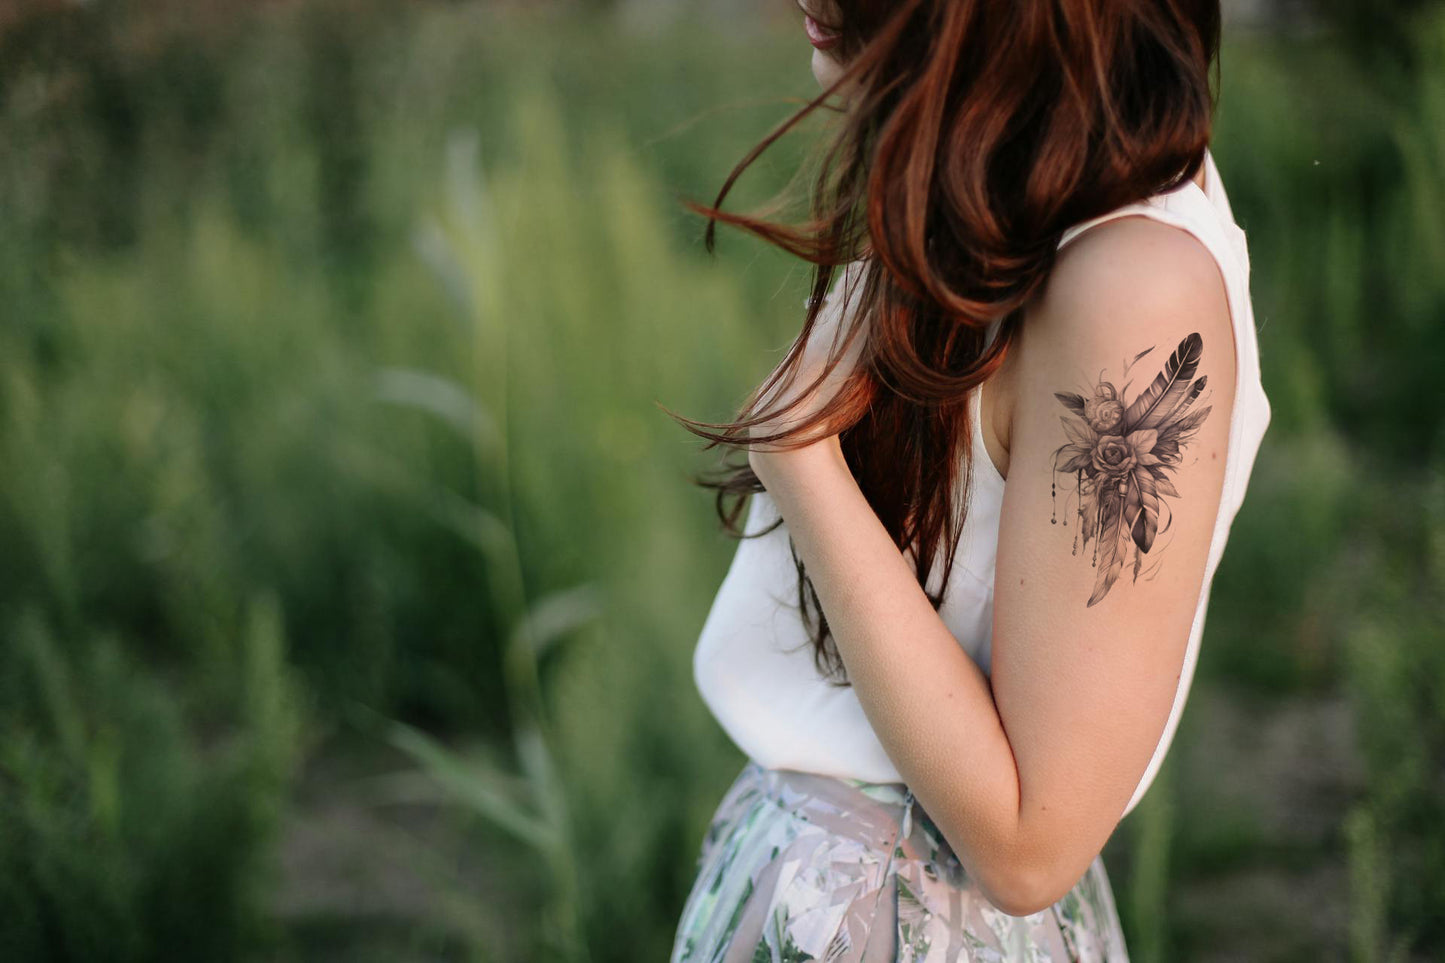 Conception de tatouage de fleurs et de plumes